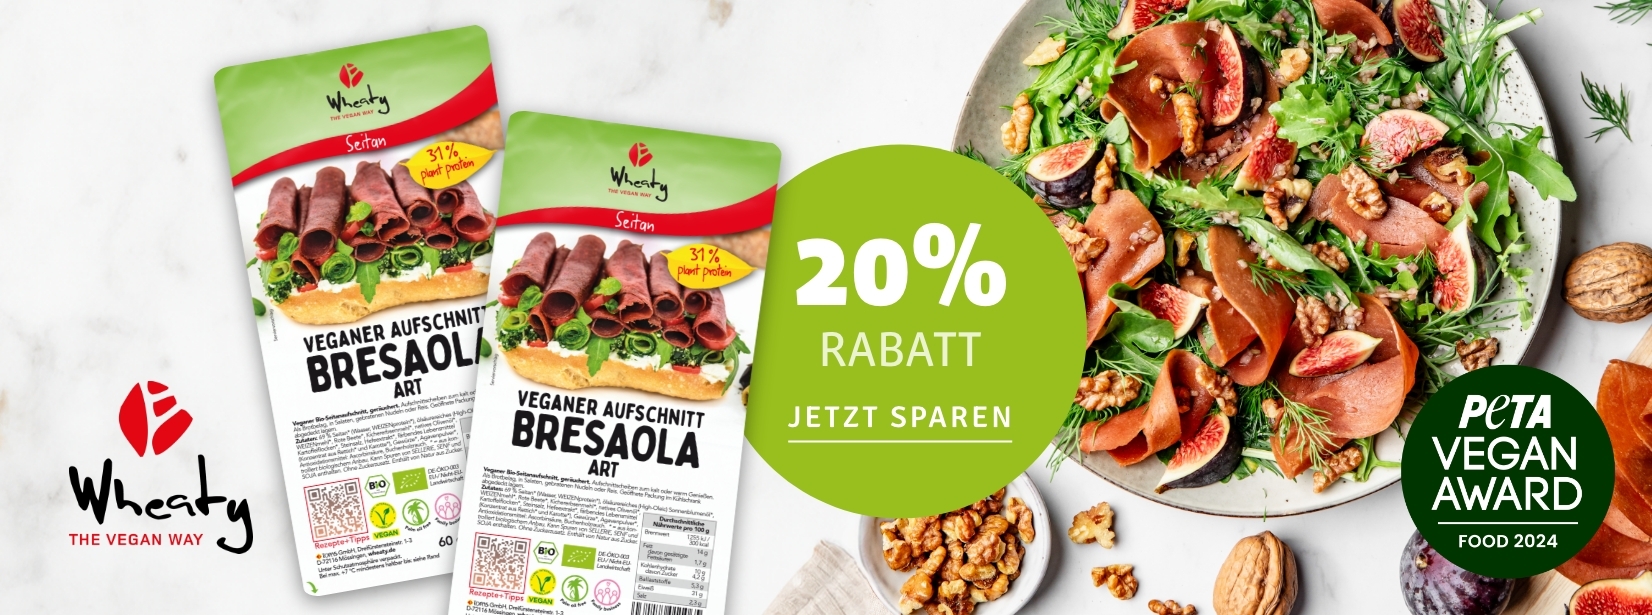 20% auf Wheaty Bresaola Aufschnitt bei kokku-online.de